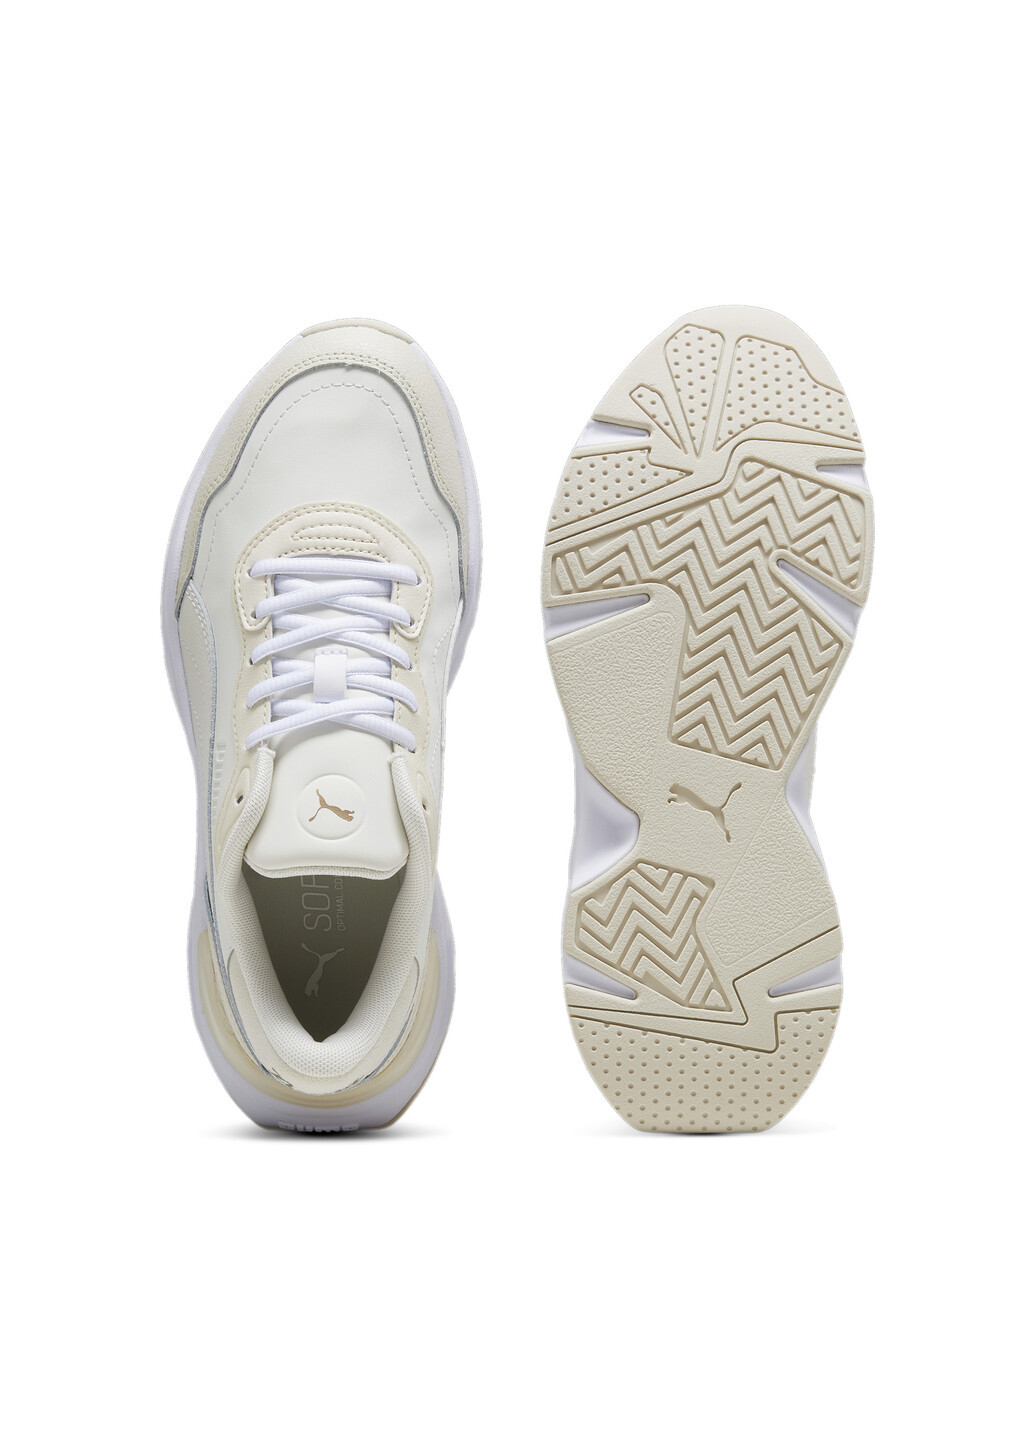 Білі всесезонні кросівки cassia rose women's sneakers Puma